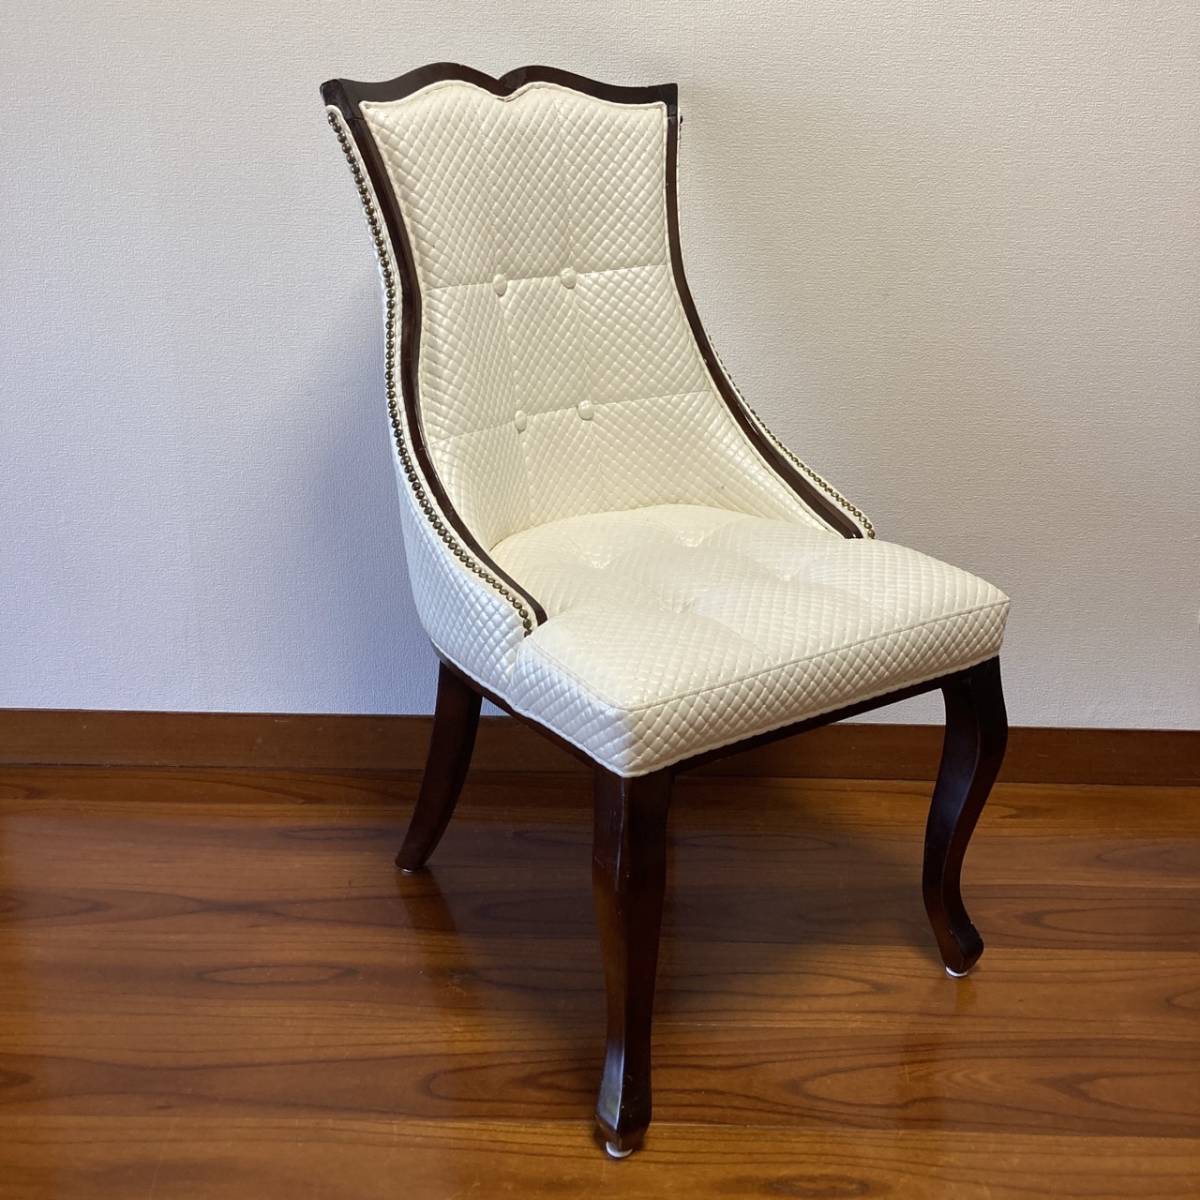 P0289-11 アンティーク調 ヨーロピアン 木製チェア 椅子 まとめ買い可 